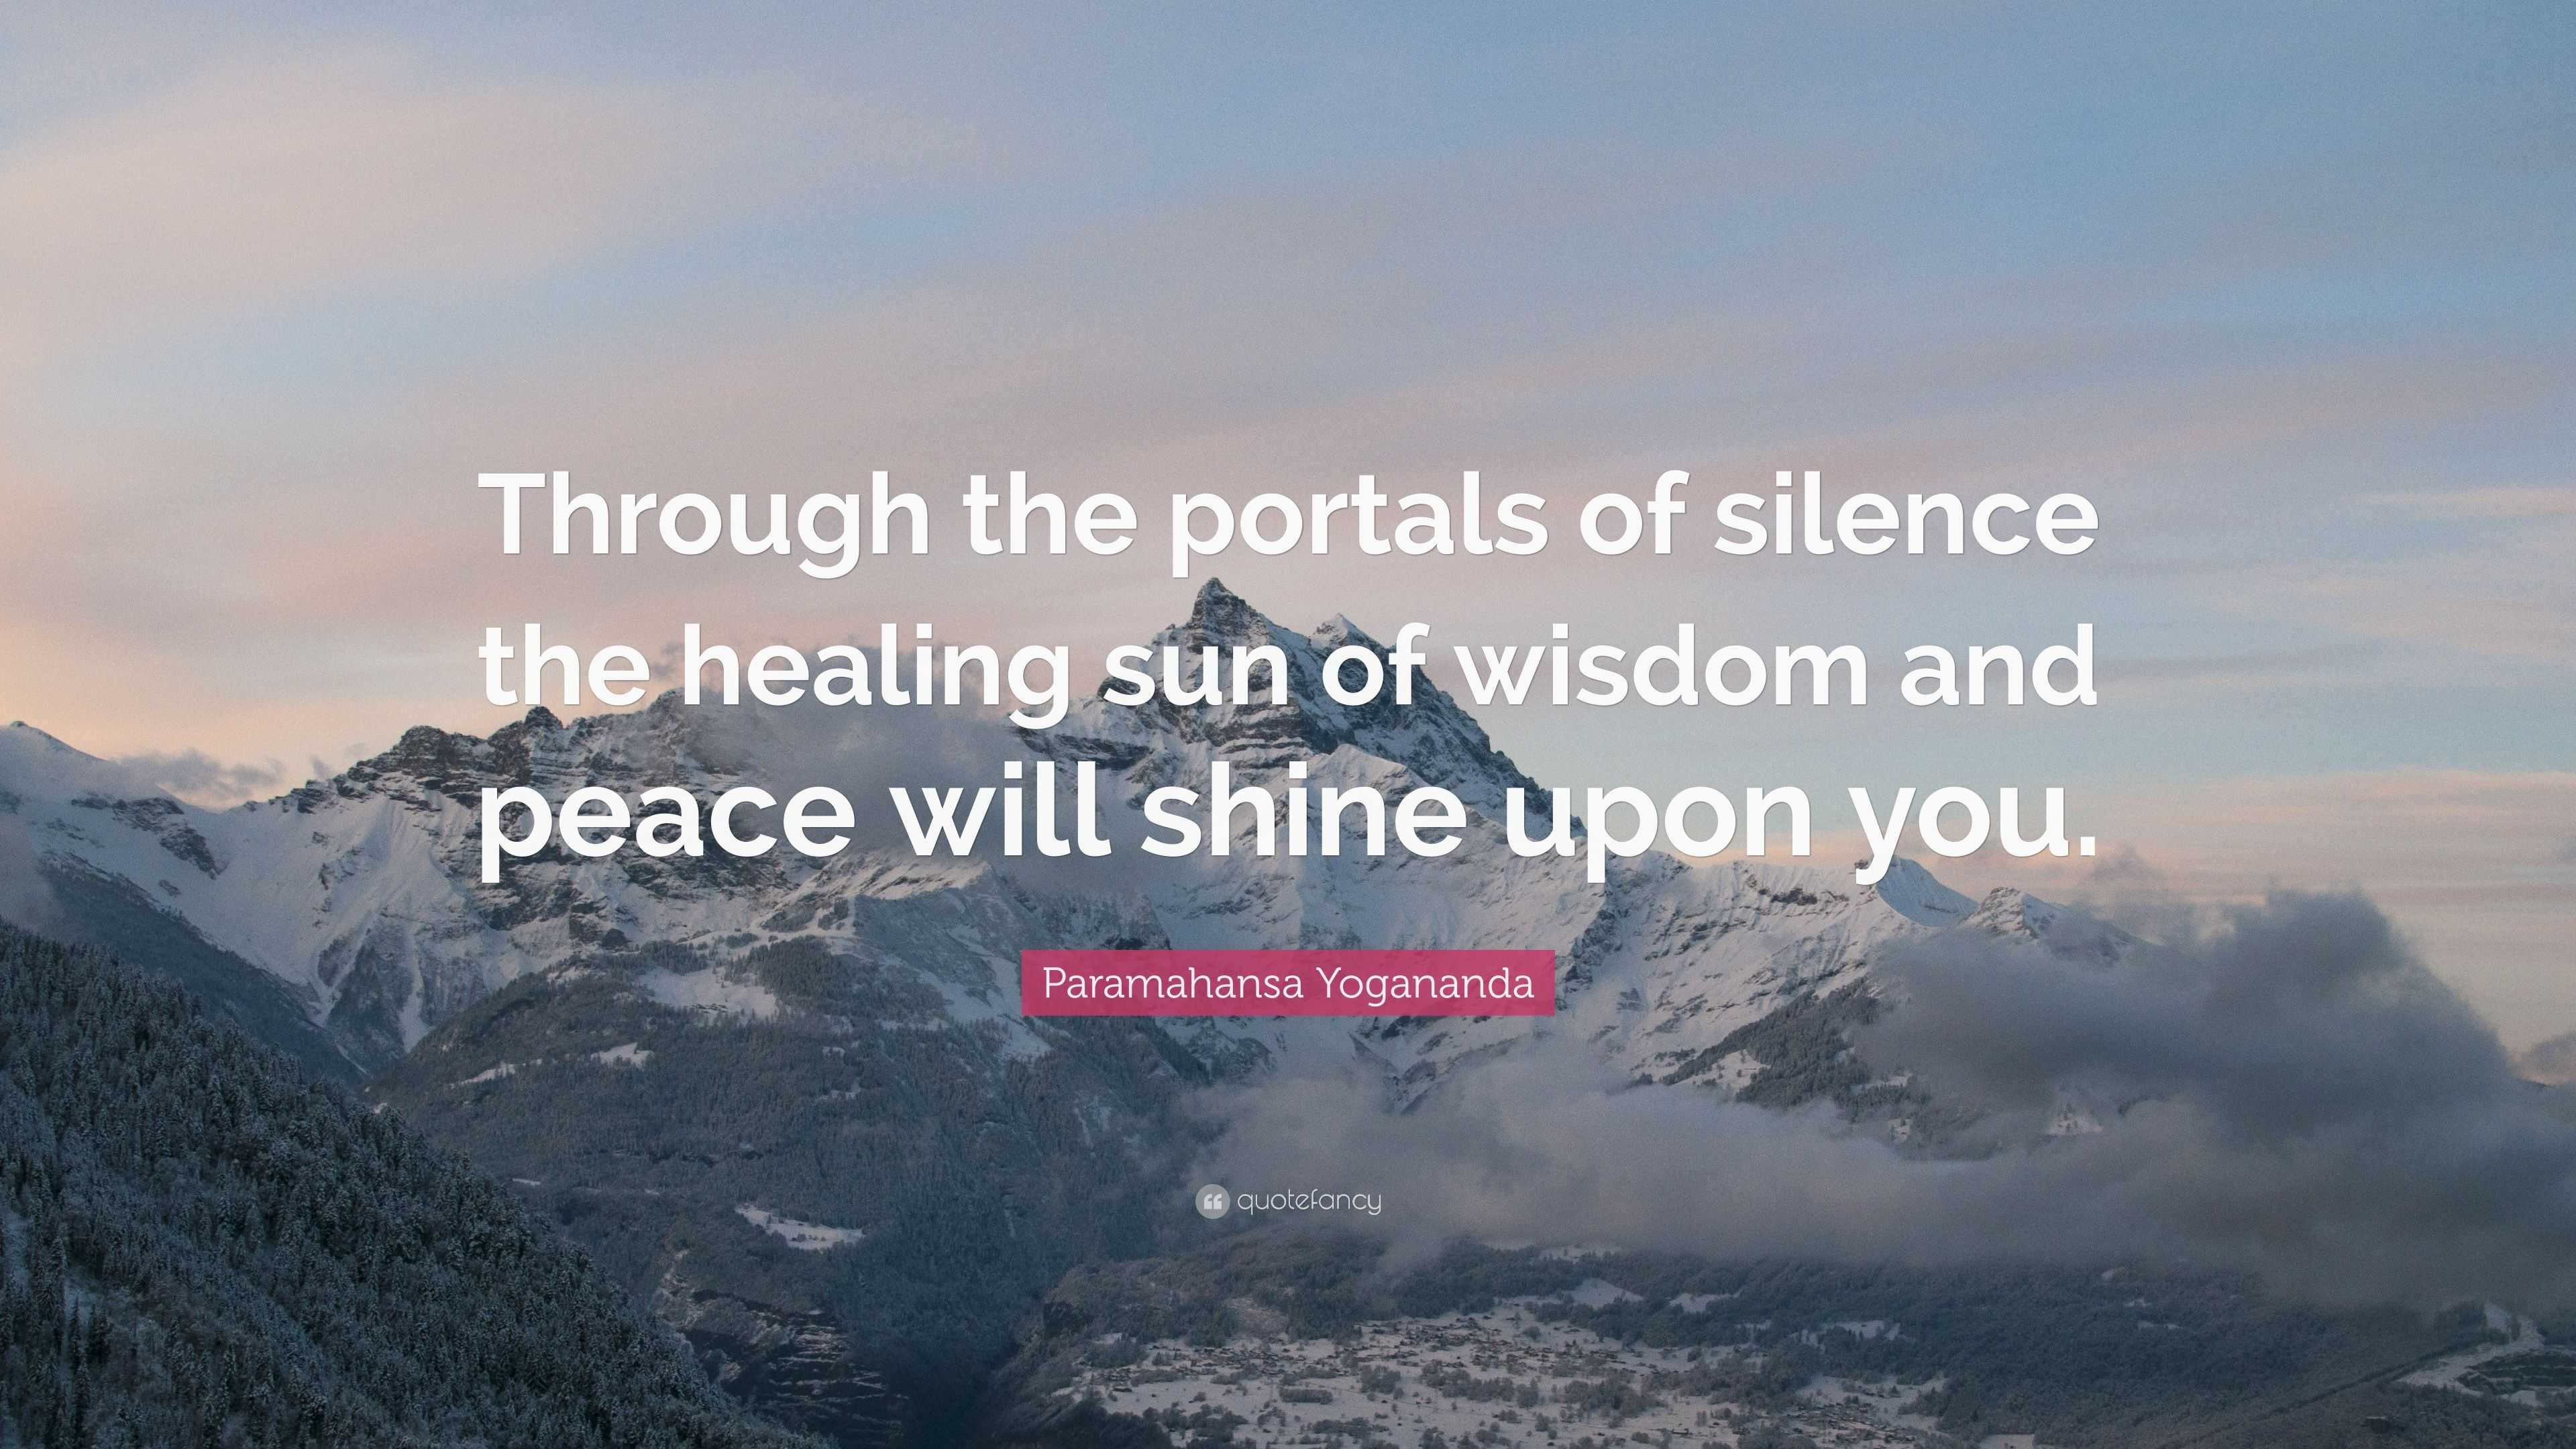 Paramahansa Yogananda Quote: “Through the portals of silence the ...